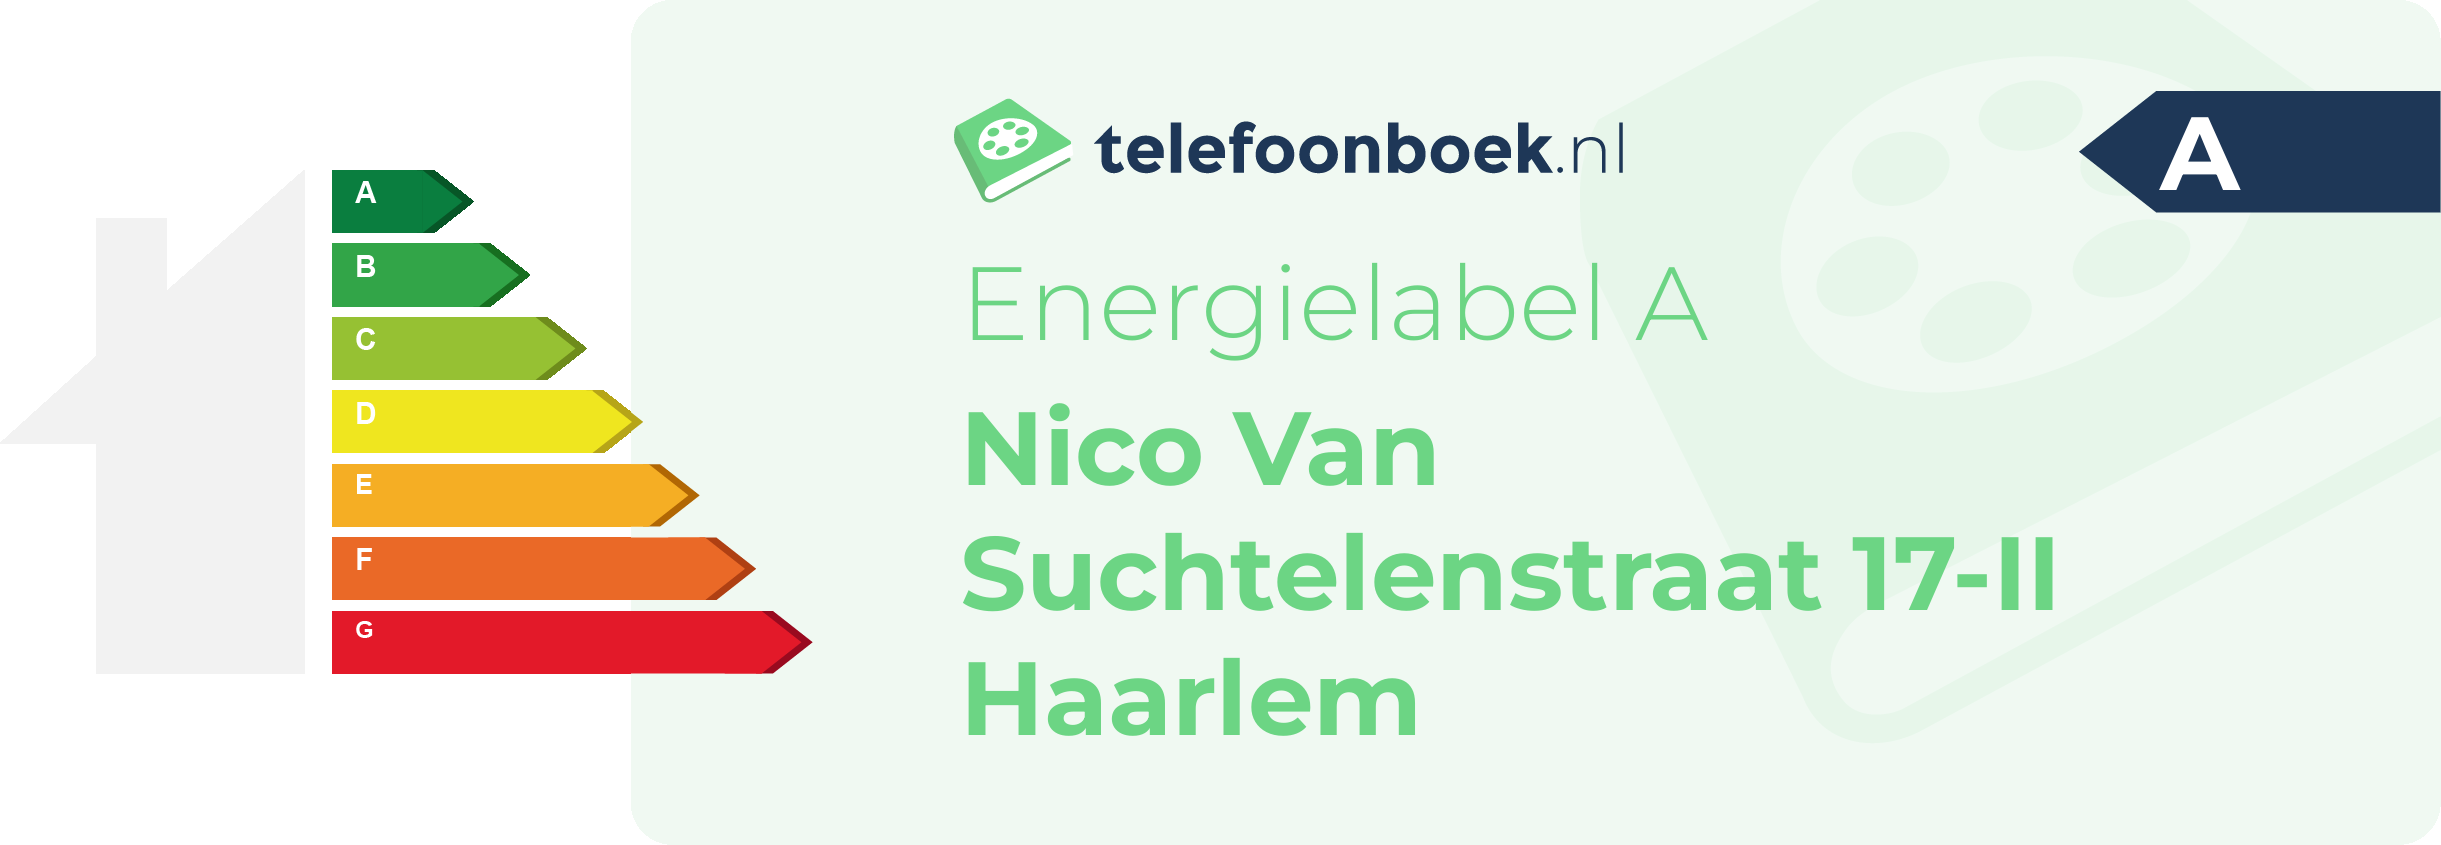 Energielabel Nico Van Suchtelenstraat 17-II Haarlem